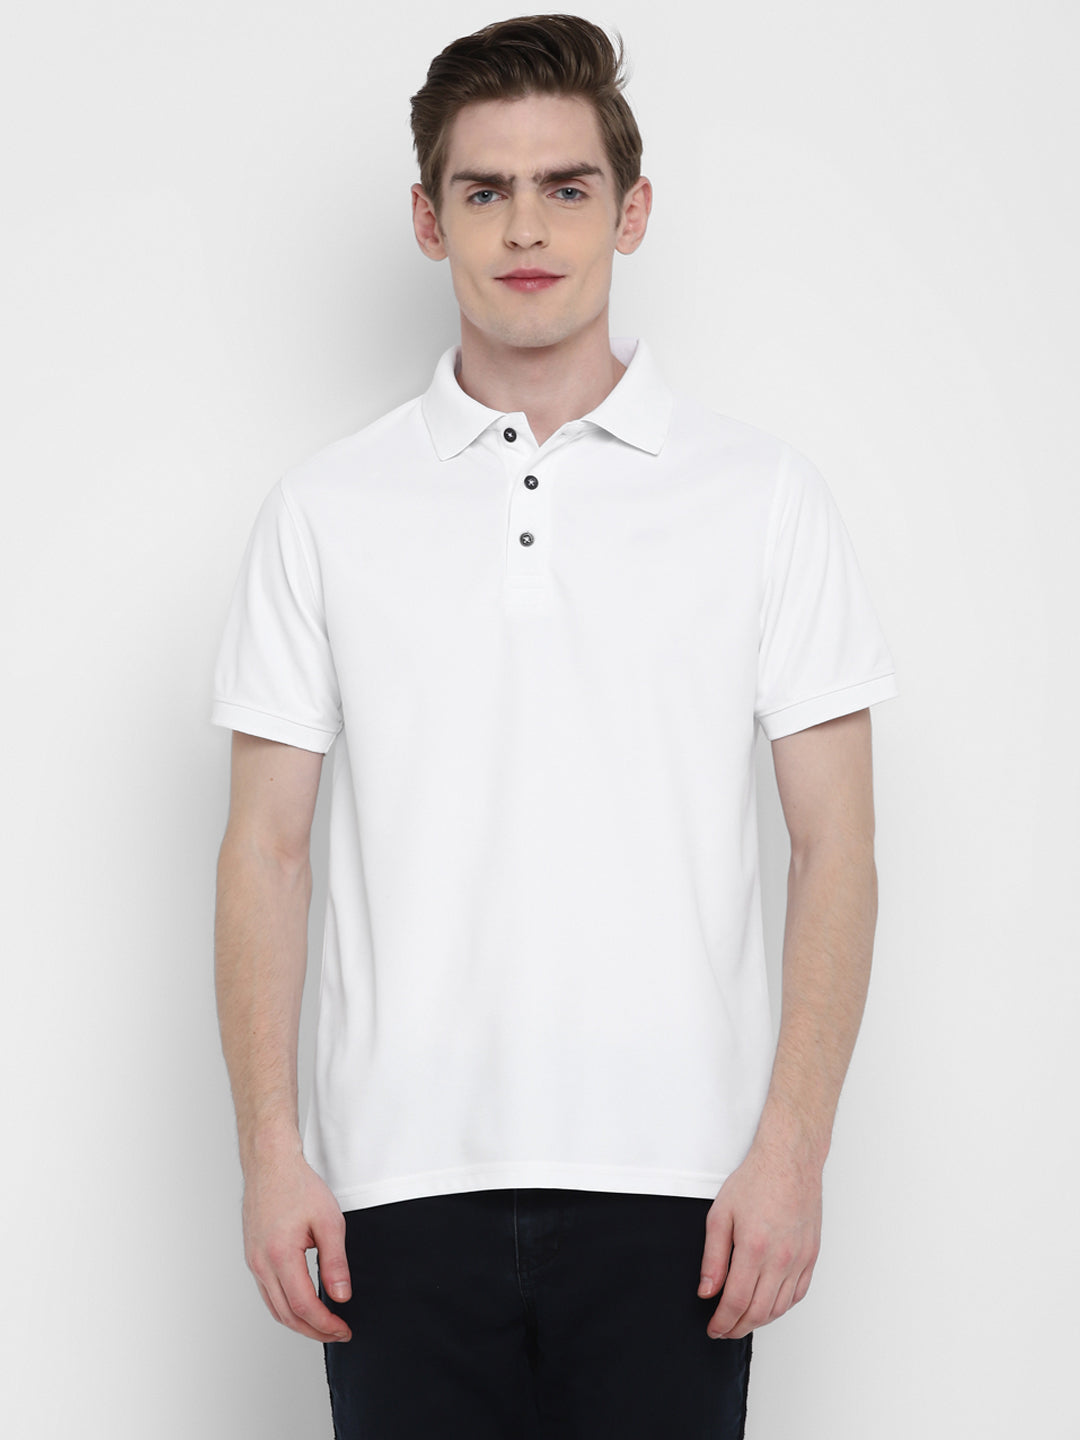 Kooltex Polo T-Shirt For Men - White